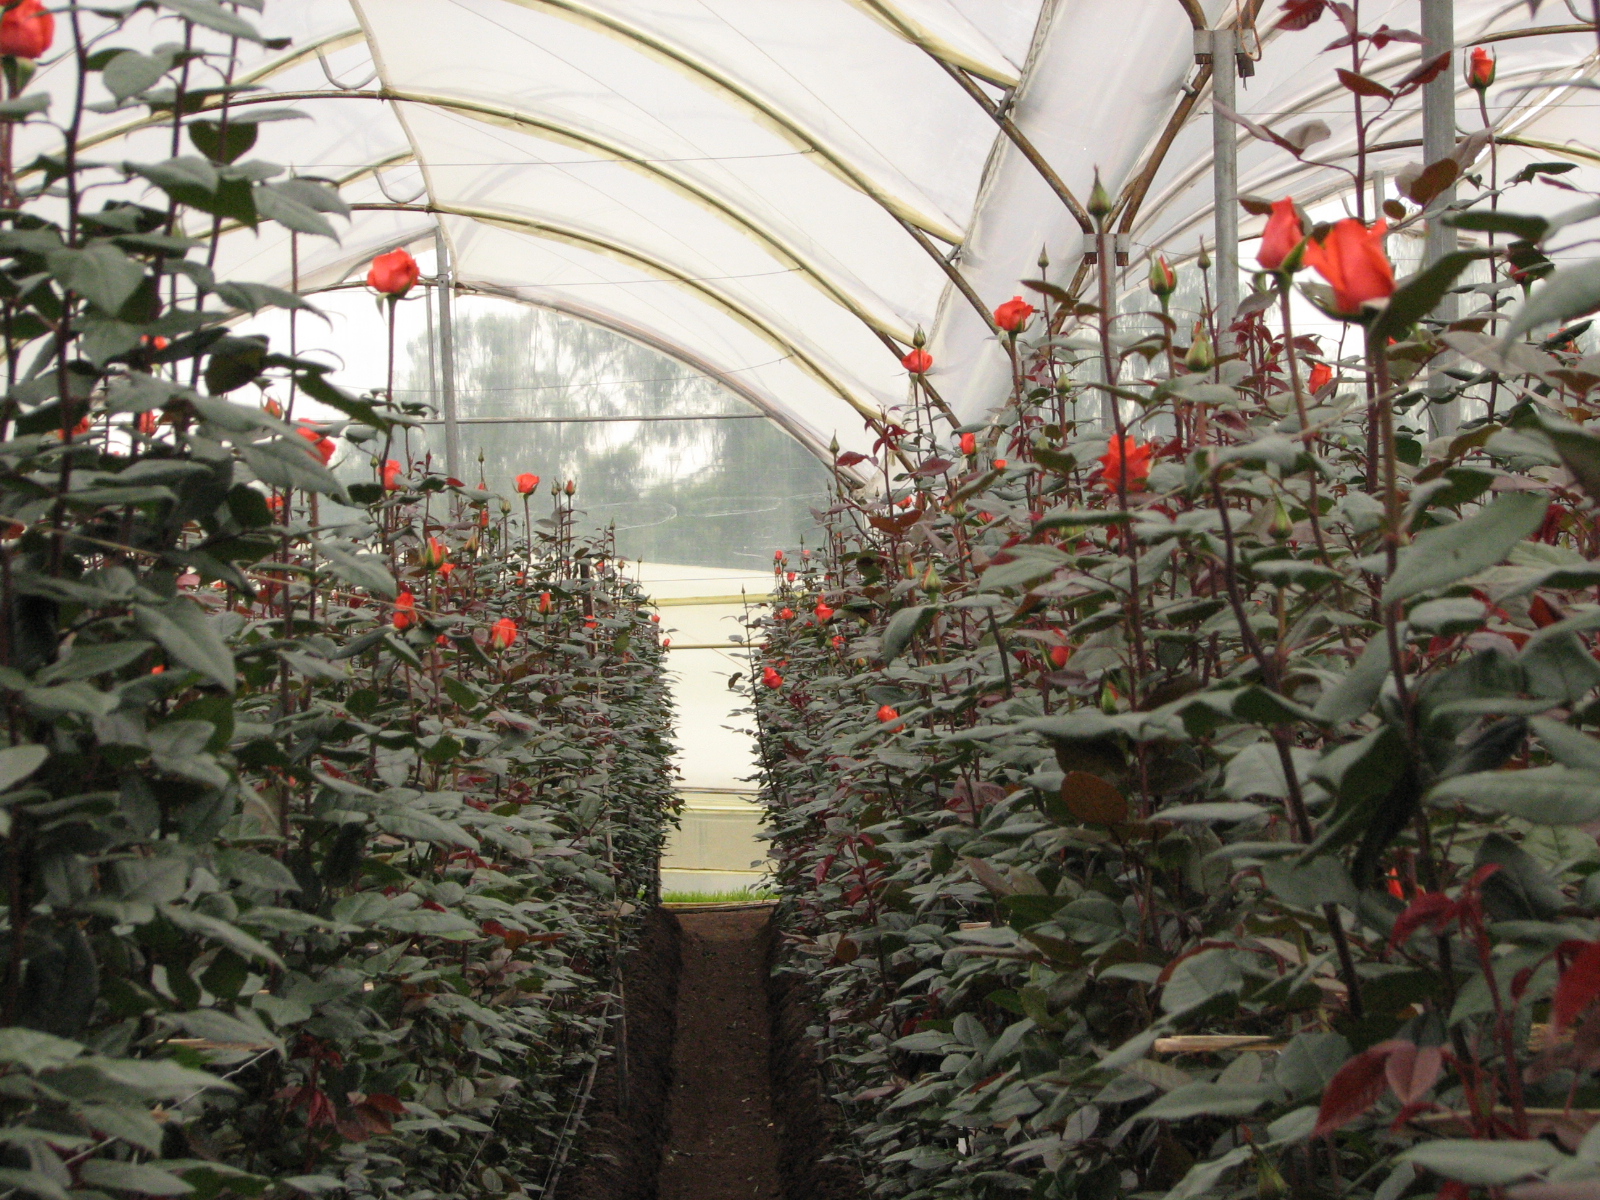 Что посадить в теплице из поликарбоната: выбор овощных культур, технология выращивания